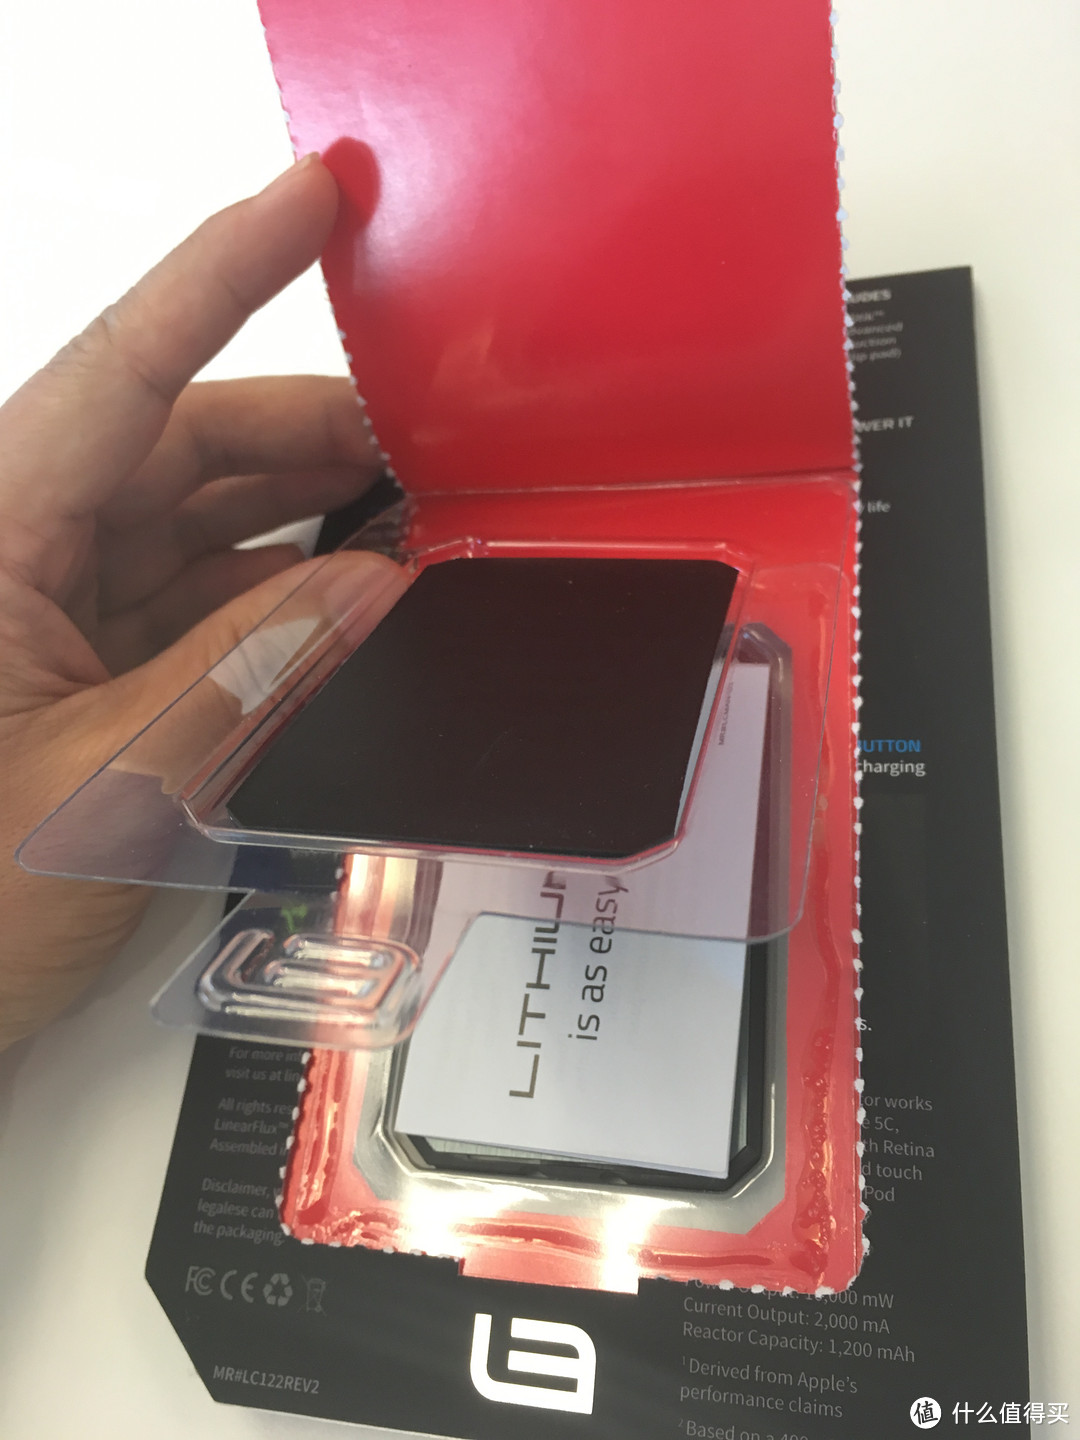 美亚海淘最轻薄卡片式移动电源 Lithiumcard